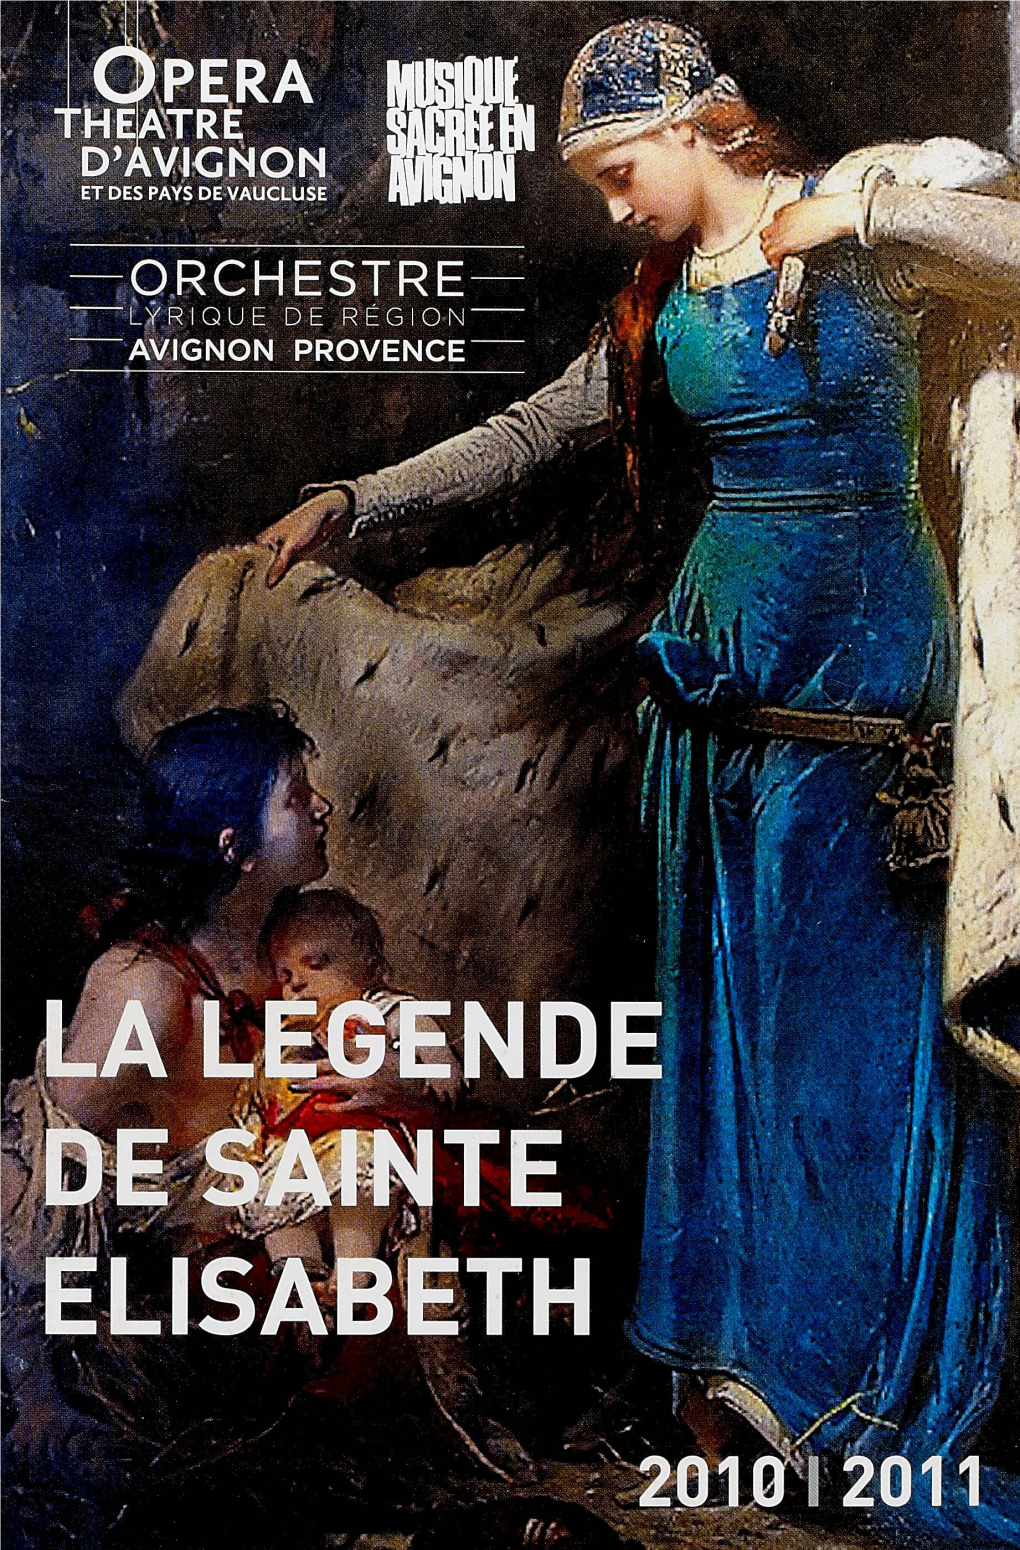 Orchestre "Lyrique De Région' Avignon Provence